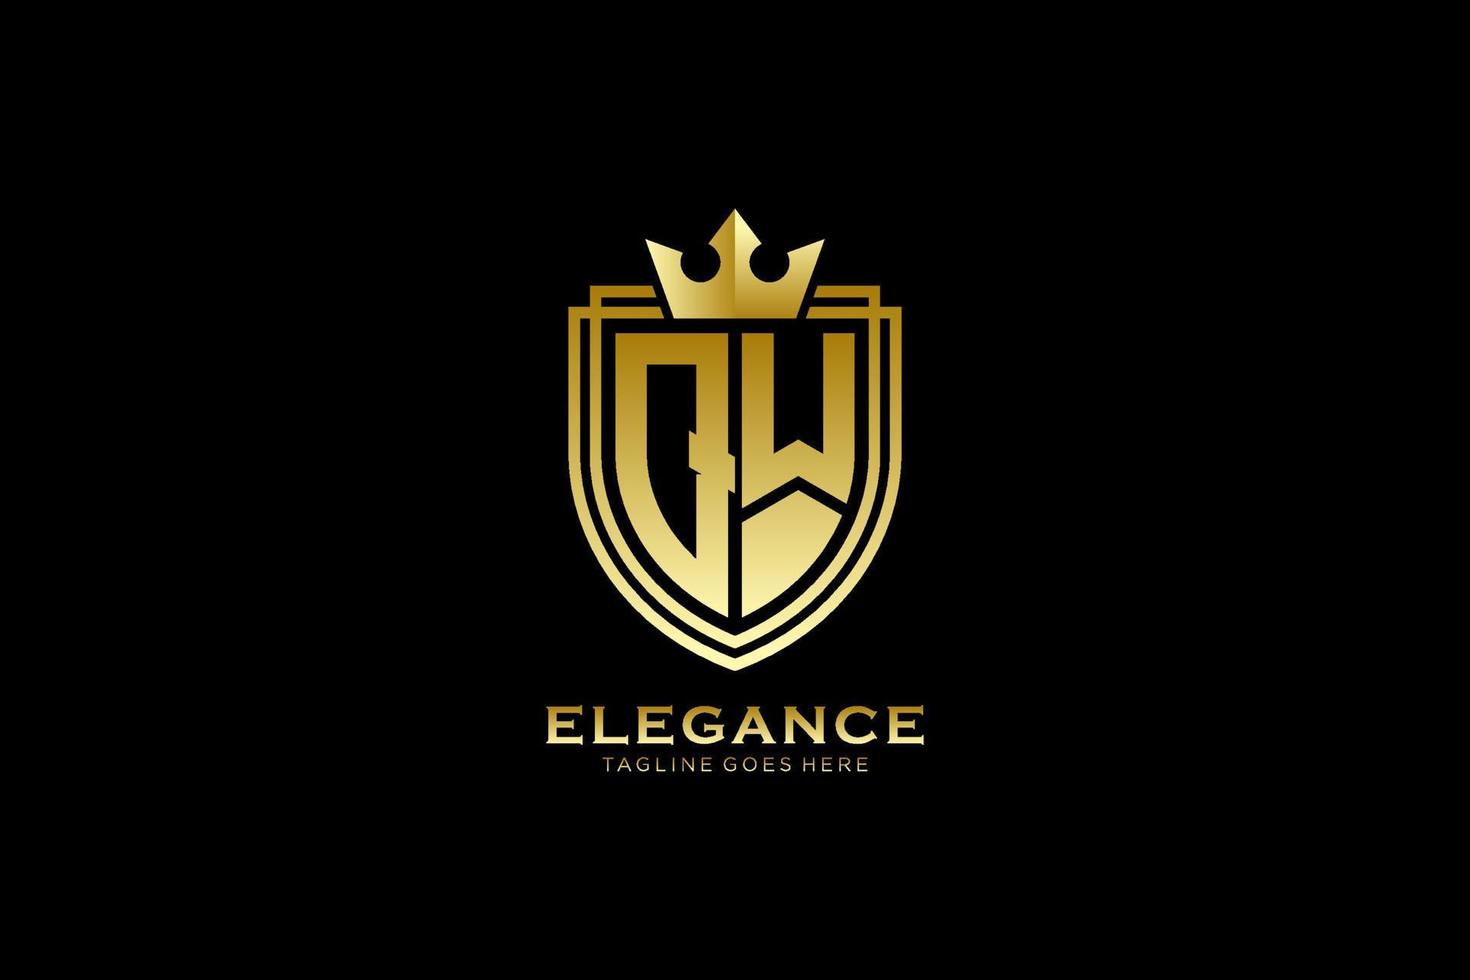 logo monogramme de luxe élégant initial qw ou modèle de badge avec volutes et couronne royale - parfait pour les projets de marque de luxe vecteur